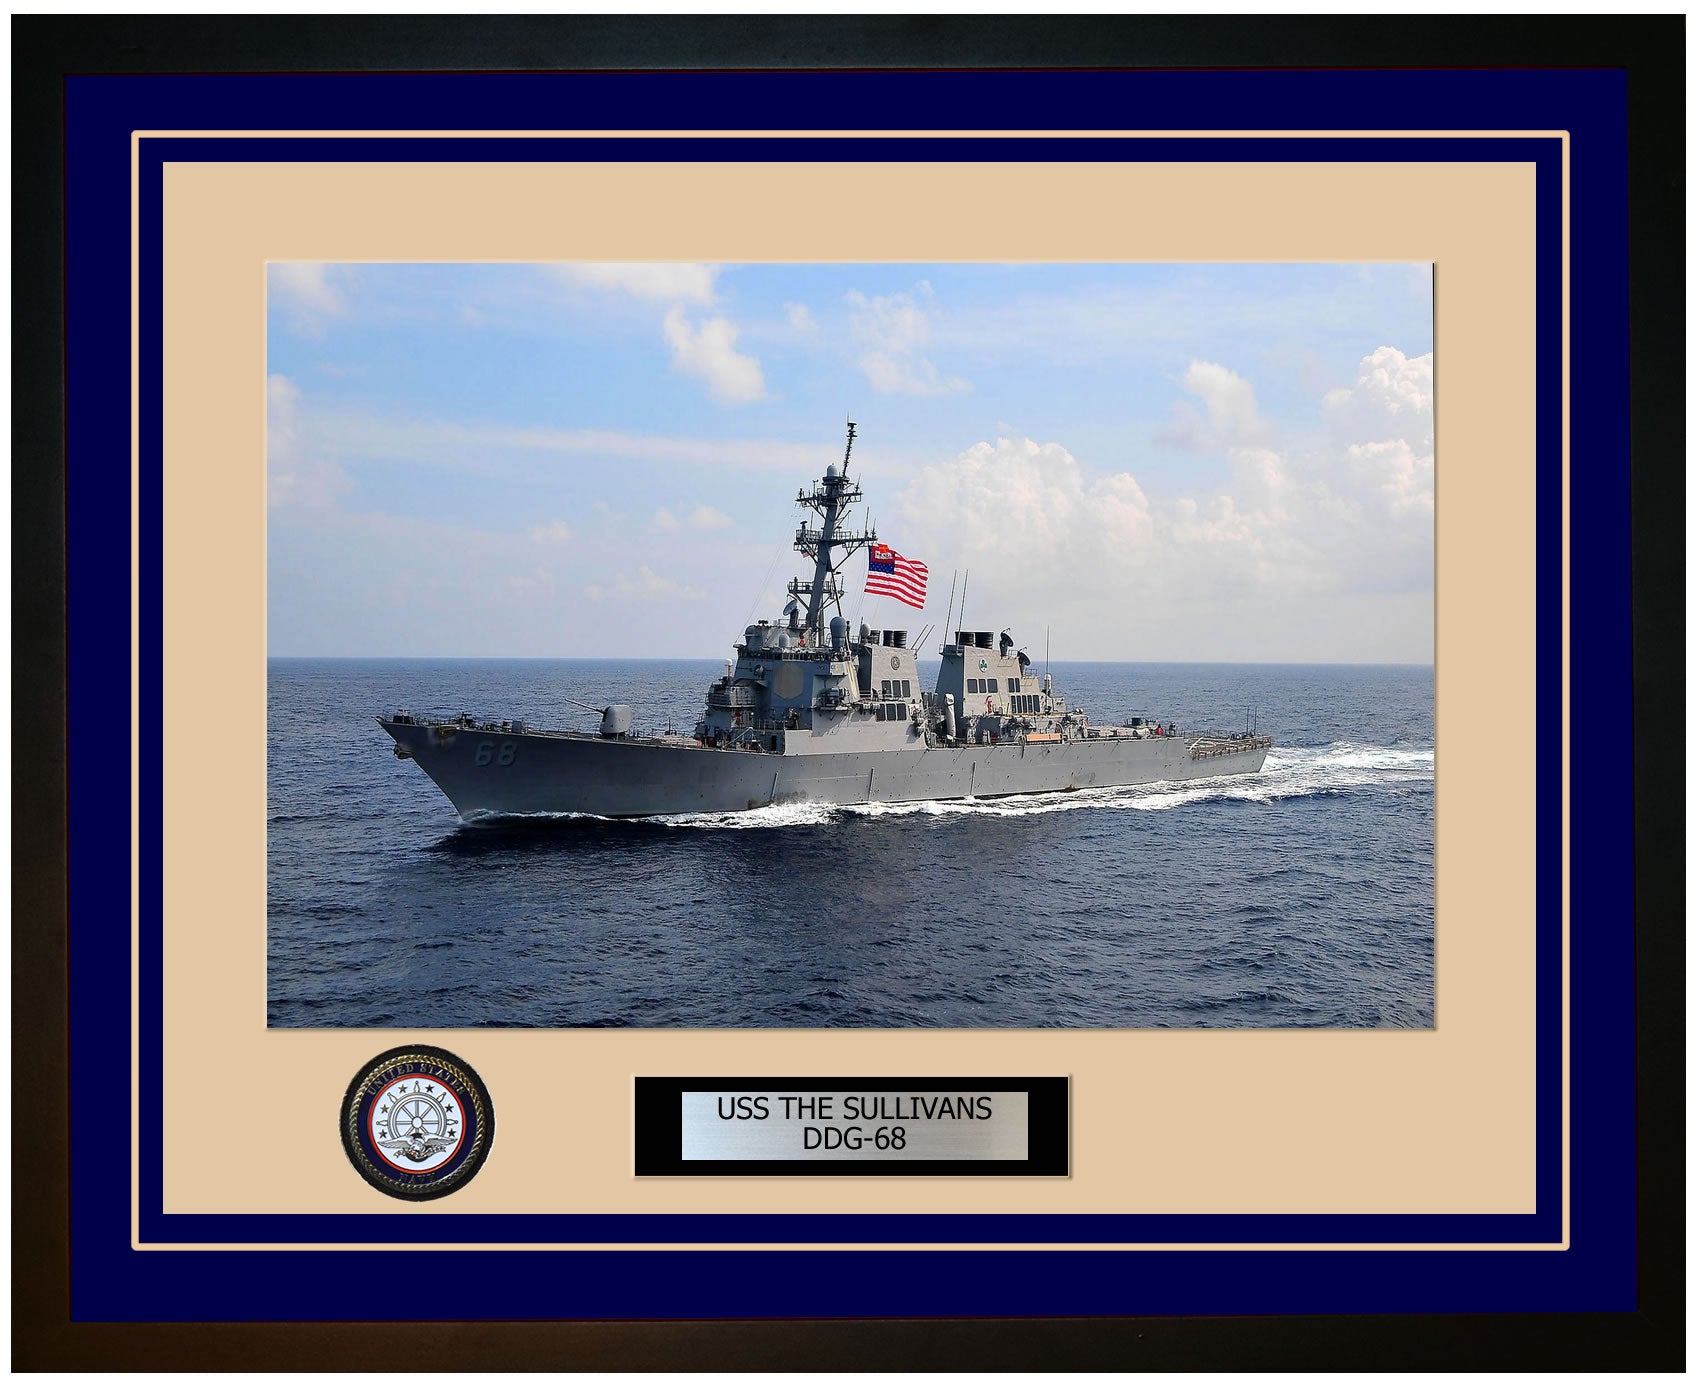 USS THE SULLIVANS DDG-68 Framed Navy Ship Photo Blue